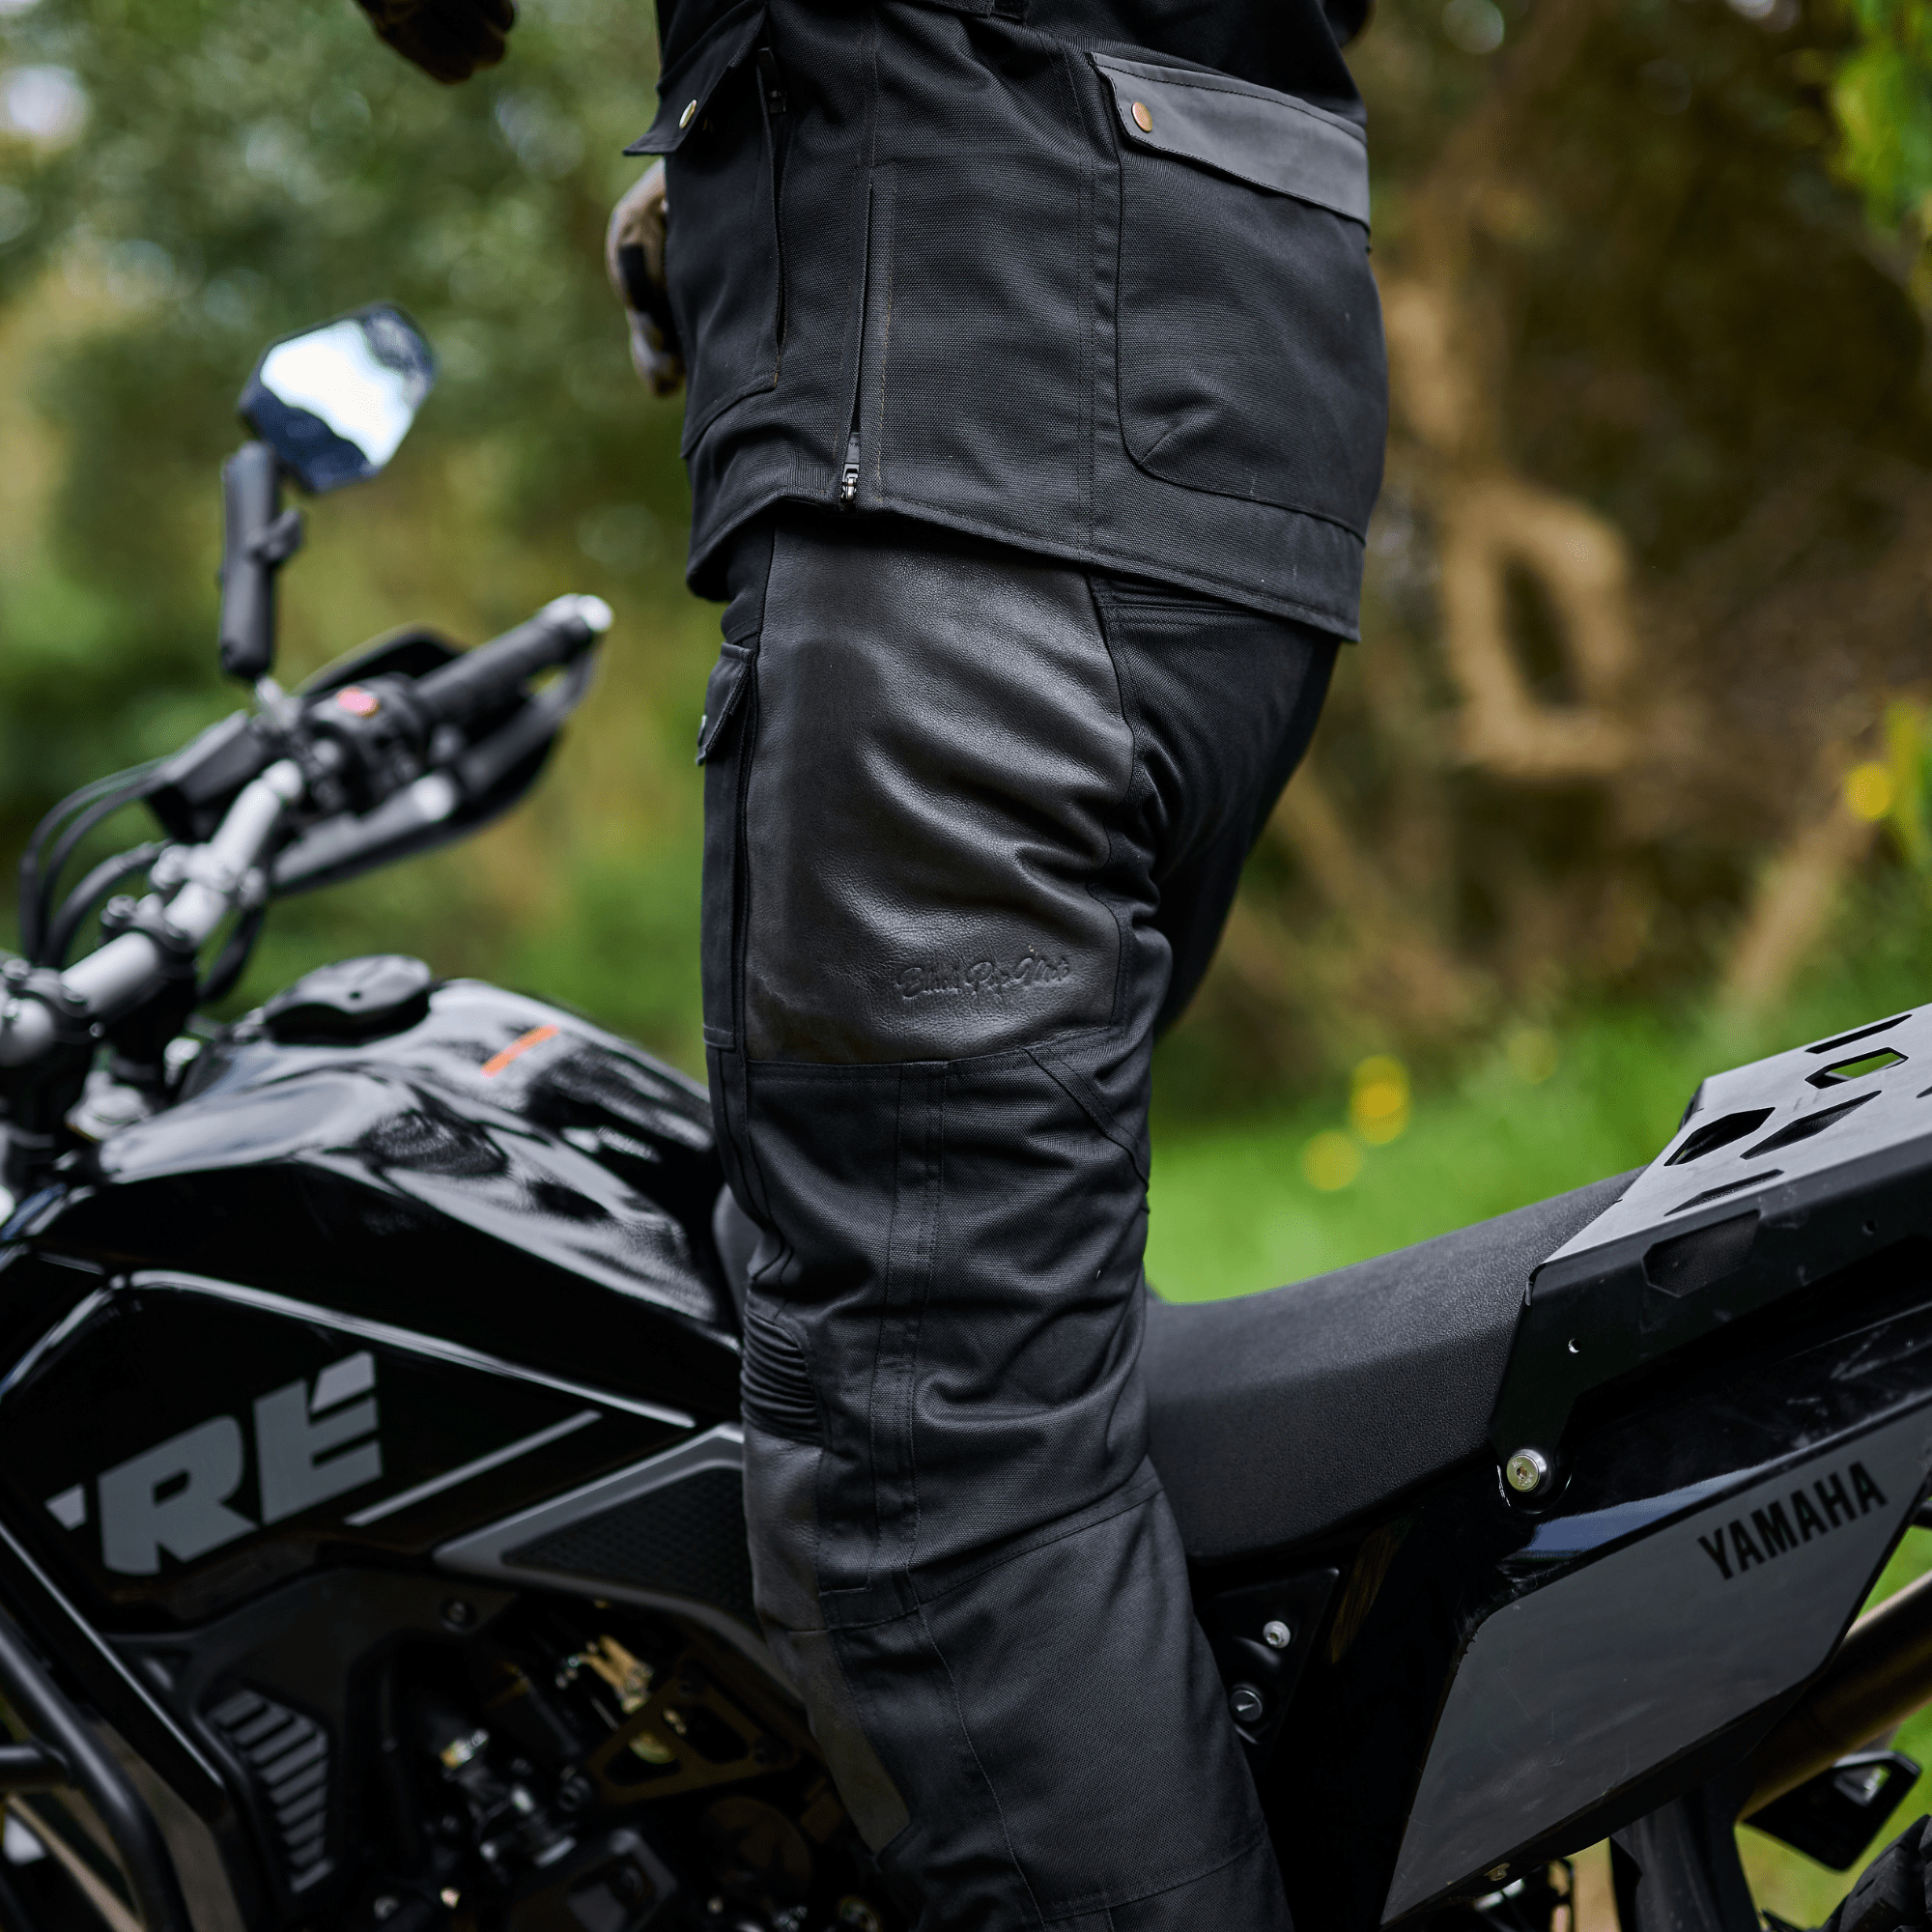 Best Summer Motorcycle Pants Guide (Updated Reviews!) - Motorcycle Gear Hub